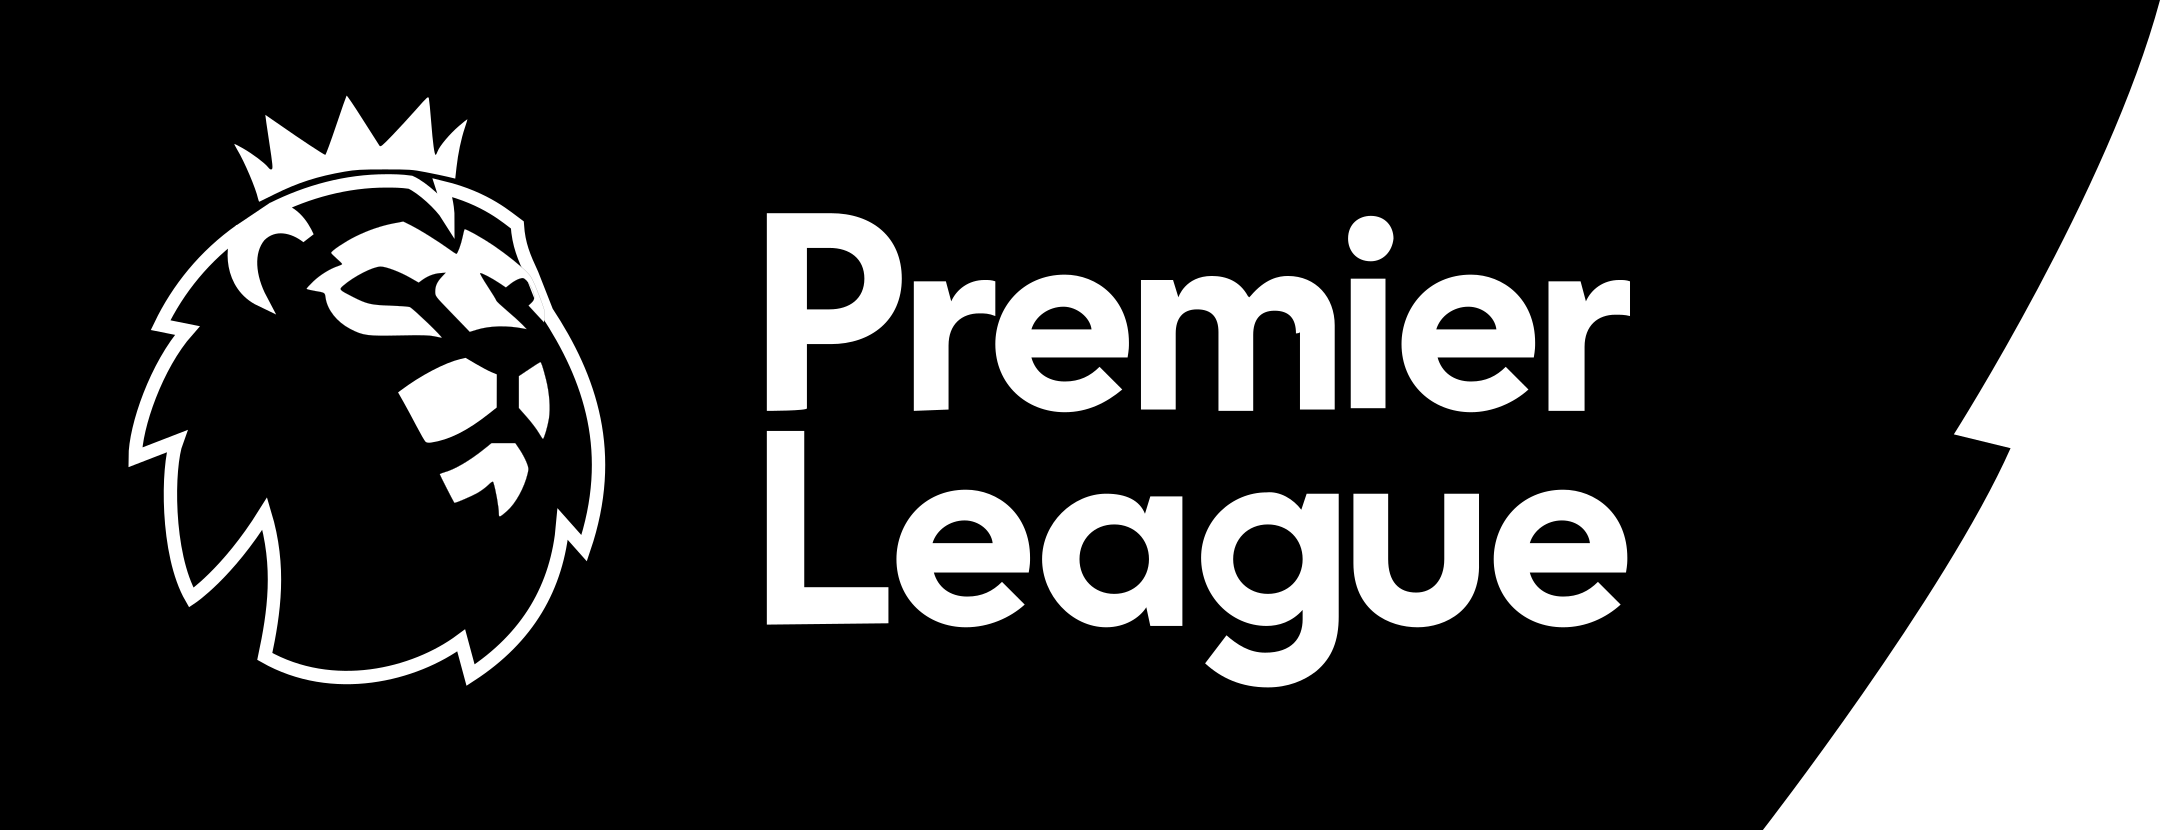 premier league 4 - Premier League Logo